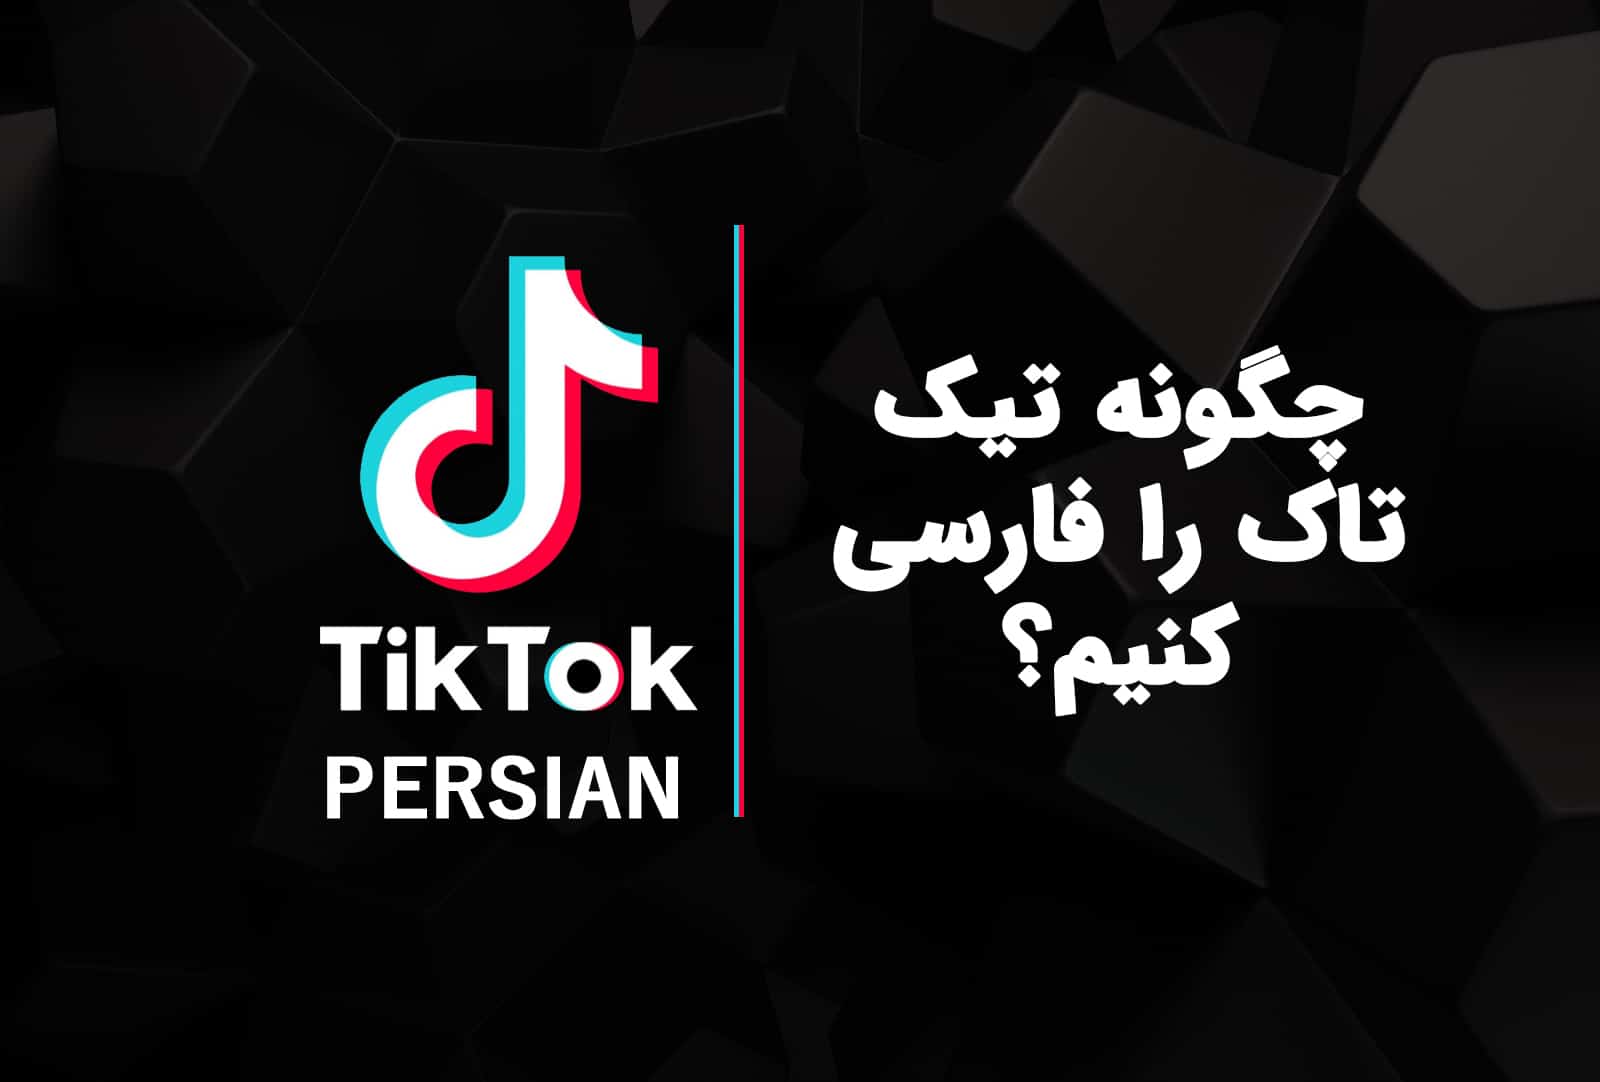 چگونه زبان تیک تاک را فارسی کنیم؟ آموزش تغییر زبان تیک تاک